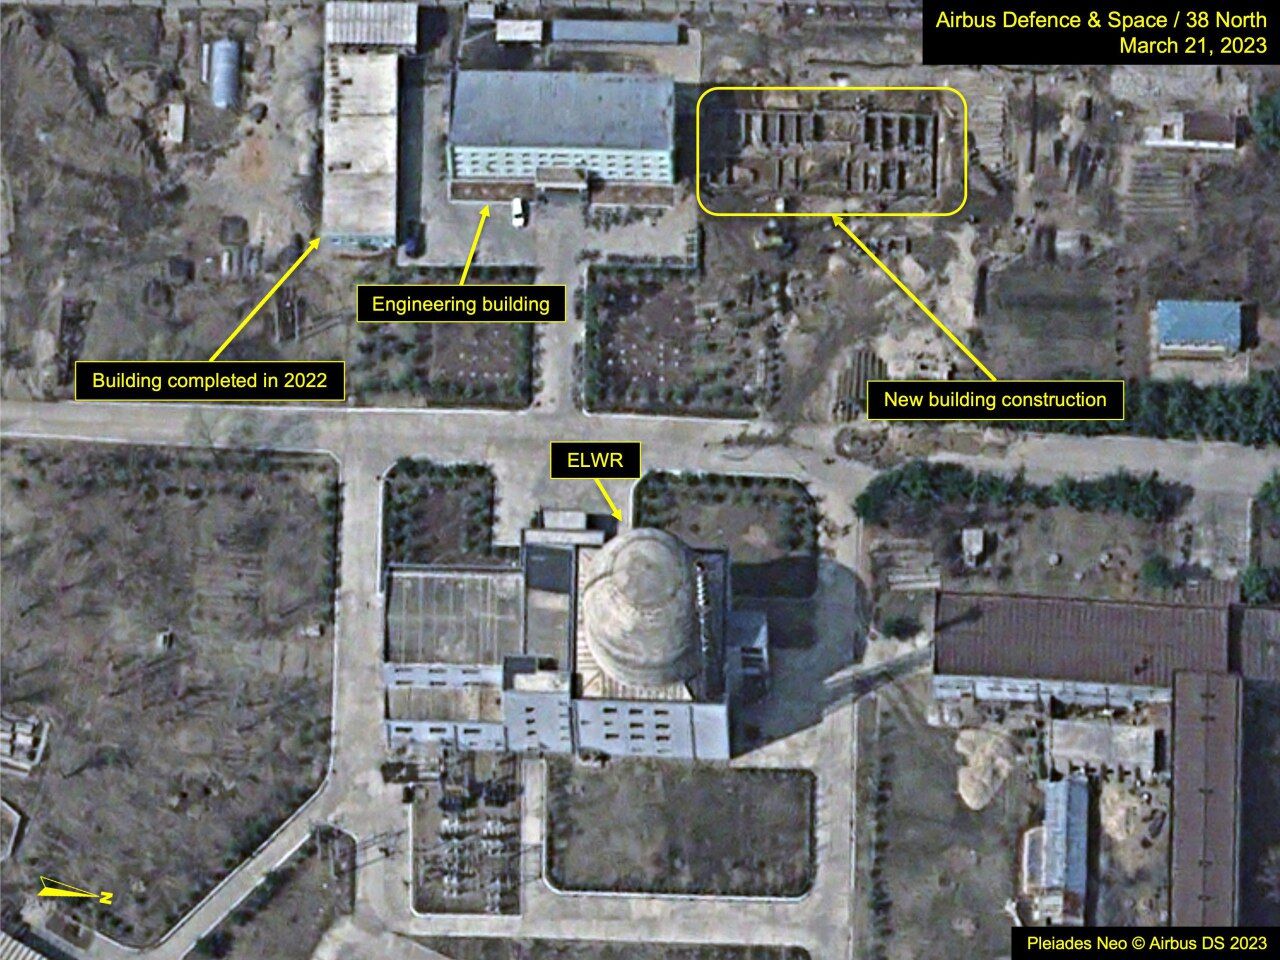 آژانس انرژی اتمی از احتمال فعالیت دومین راکتور هسته‌ای کره شمالی خبر داد